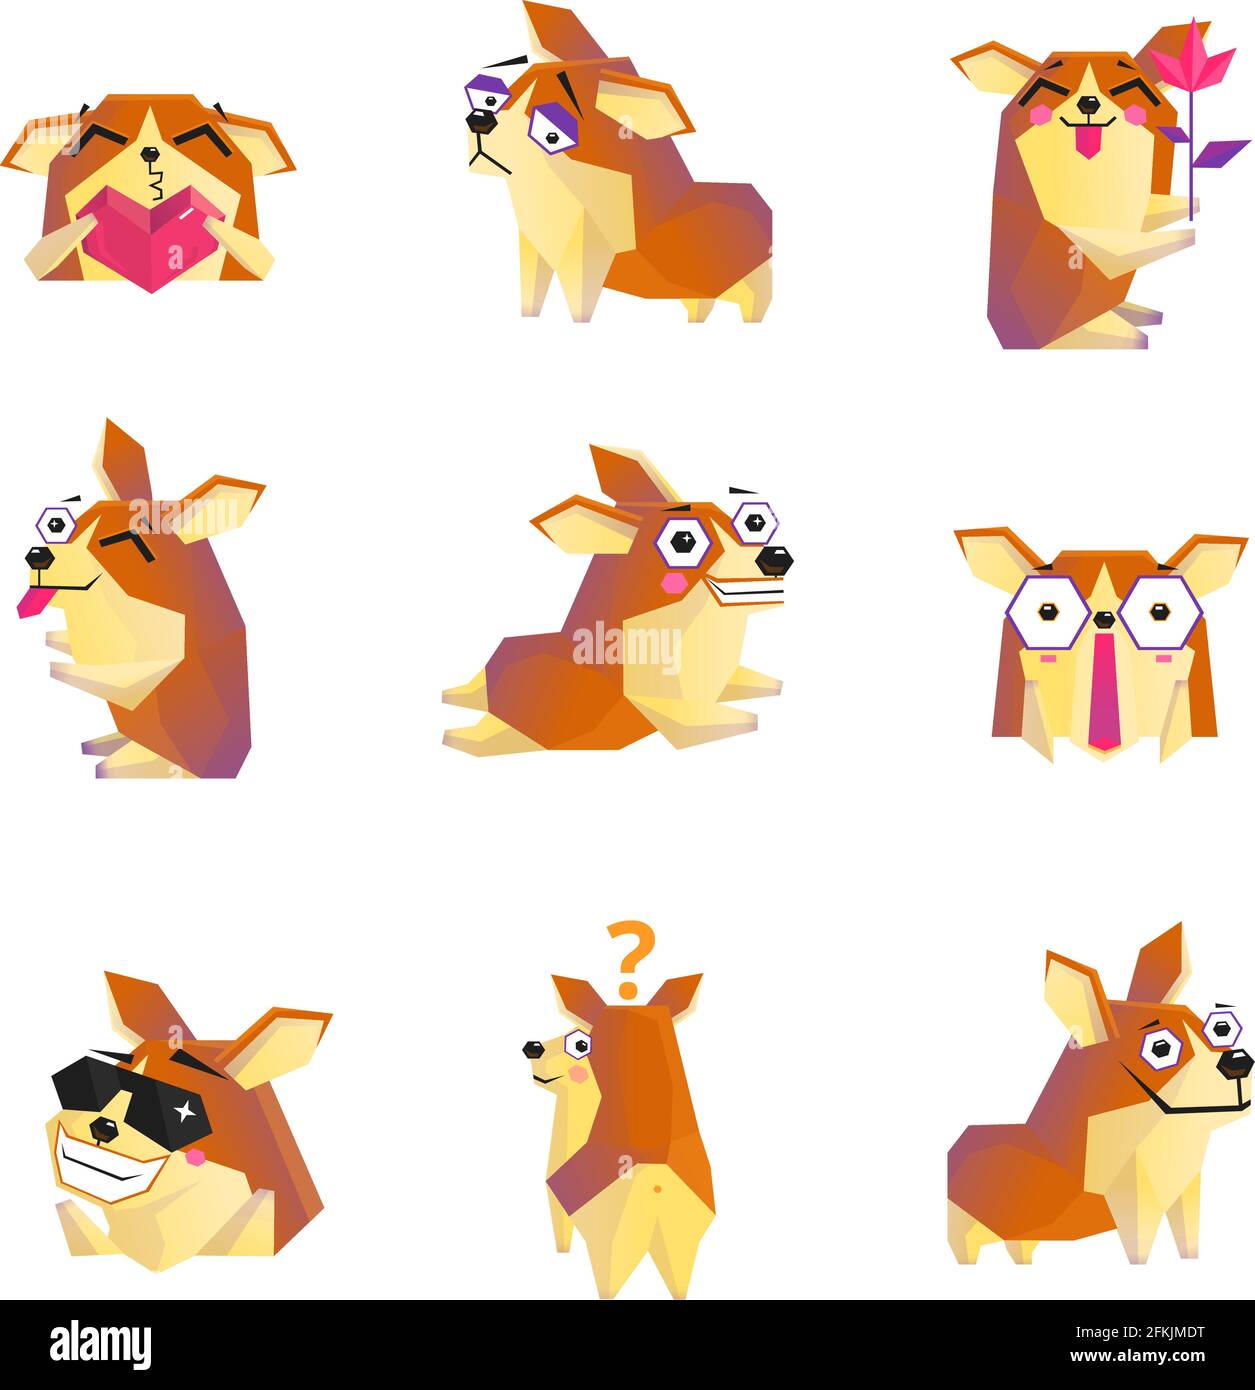 Adorable corgi chien animation dessin animé personnages icônes collection  avec coeur illustration vectorielle isolée de rose et de lunettes de soleil  Image Vectorielle Stock - Alamy